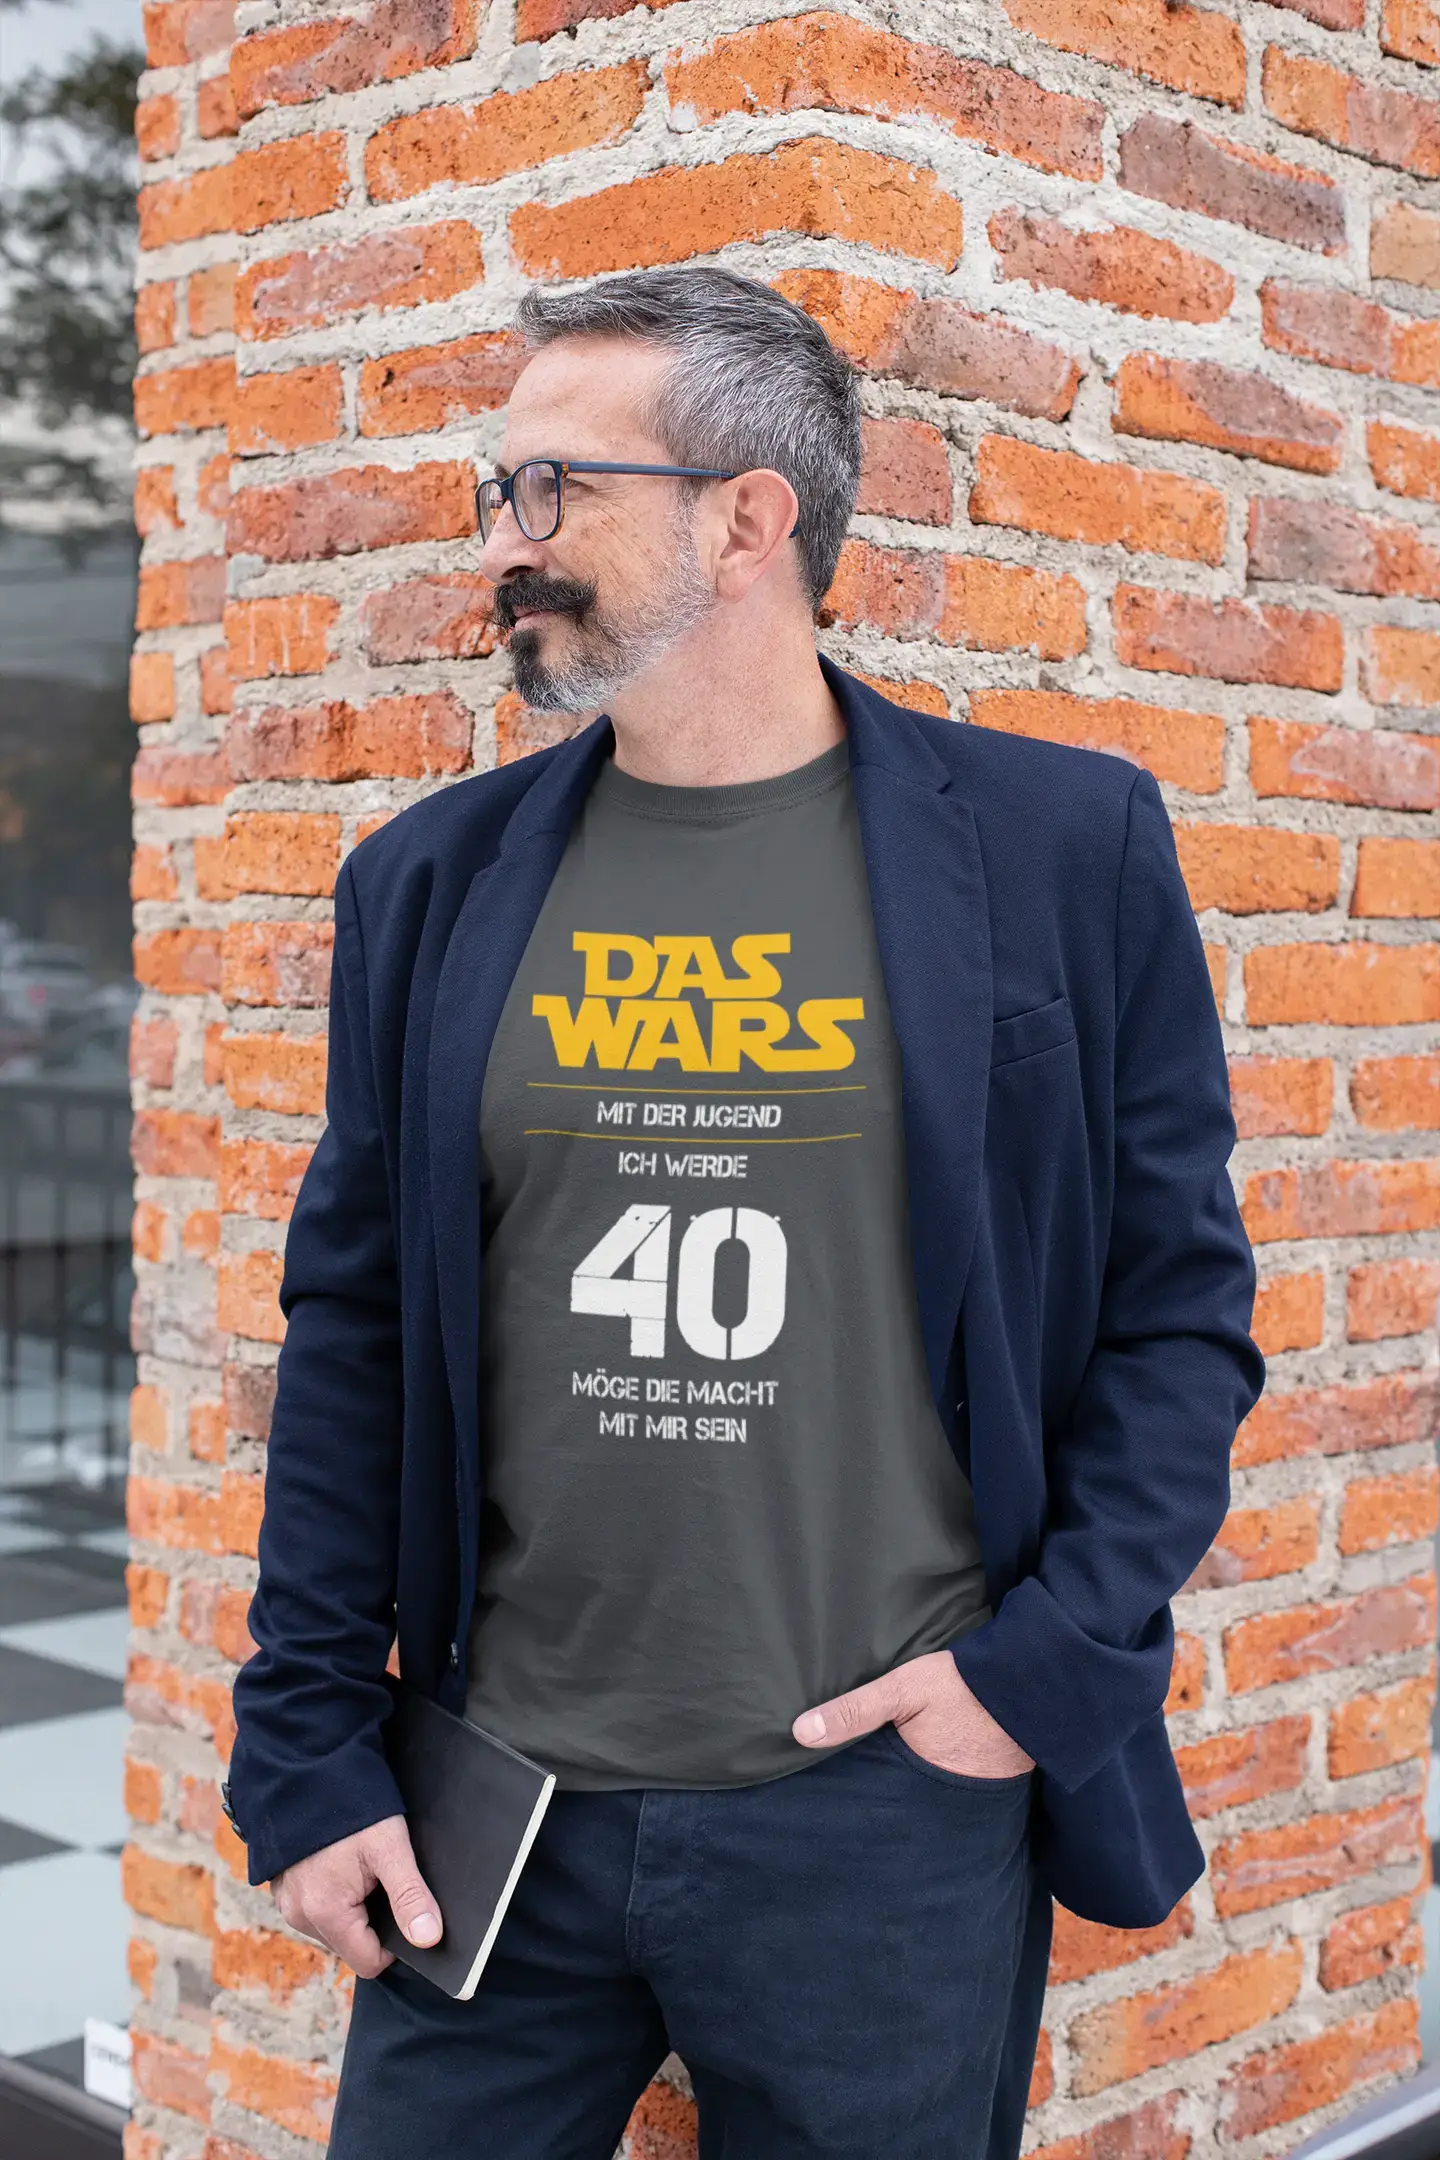 Men's Graphic T-Shirt 40 Jahre Alt, Das wars mit der Jugend Gift Idea